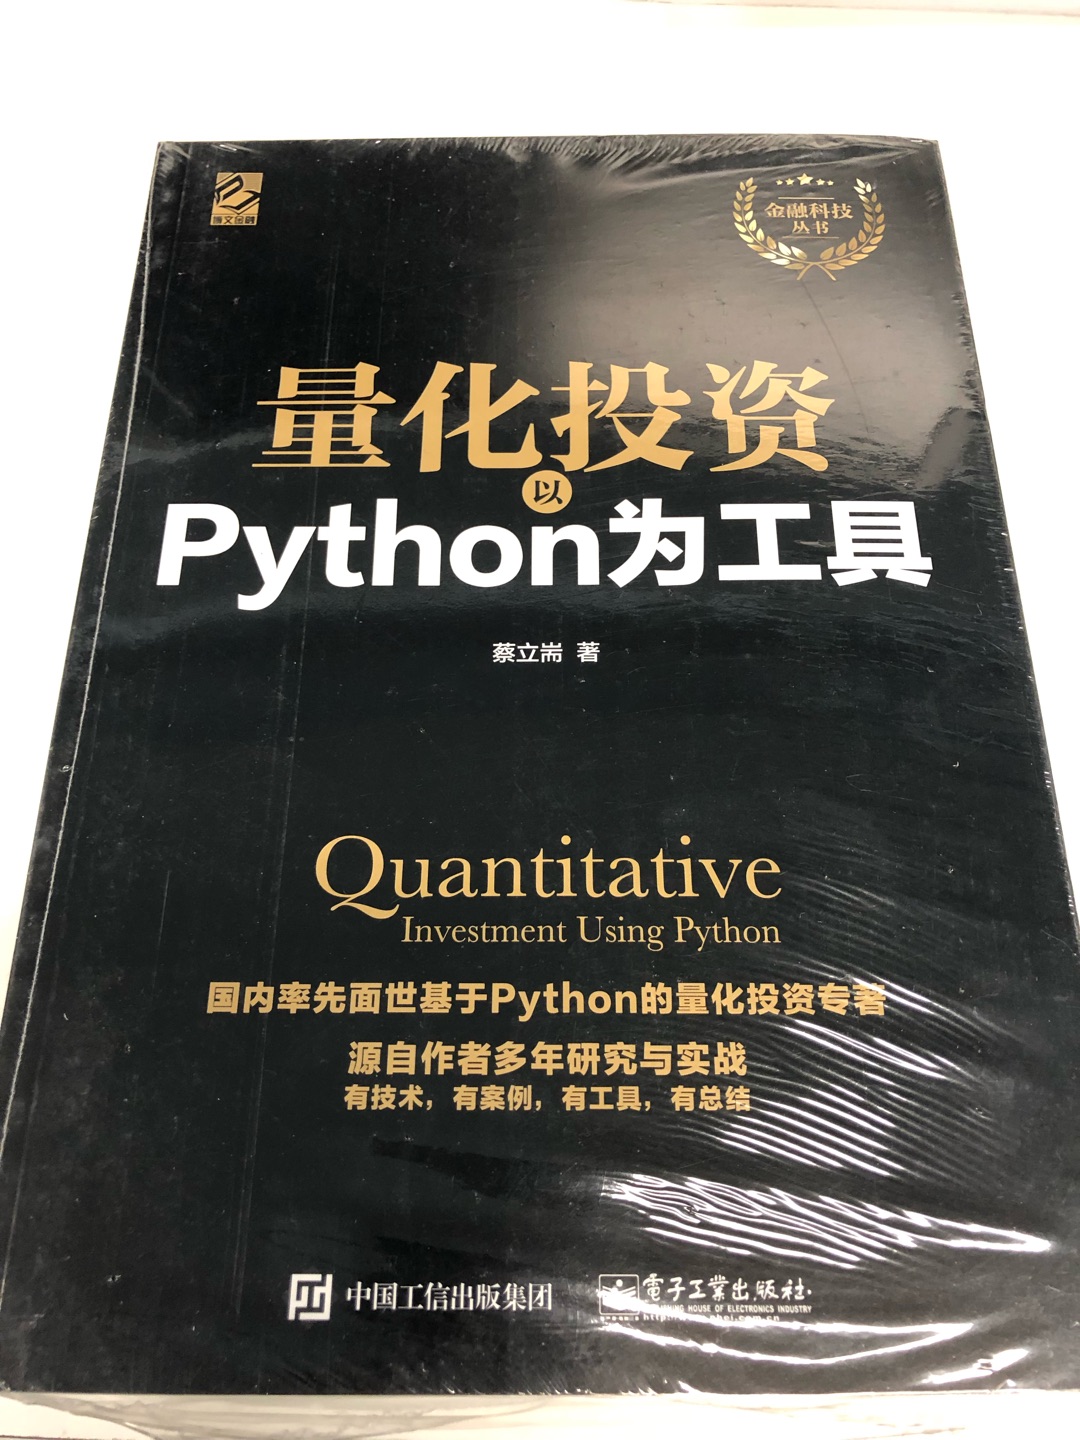 Python作为近期以来的热门语言一直为热门所喜爱，结合量化投资充分发挥其优秀的特性，书本包装严实，内容适合无基础者。